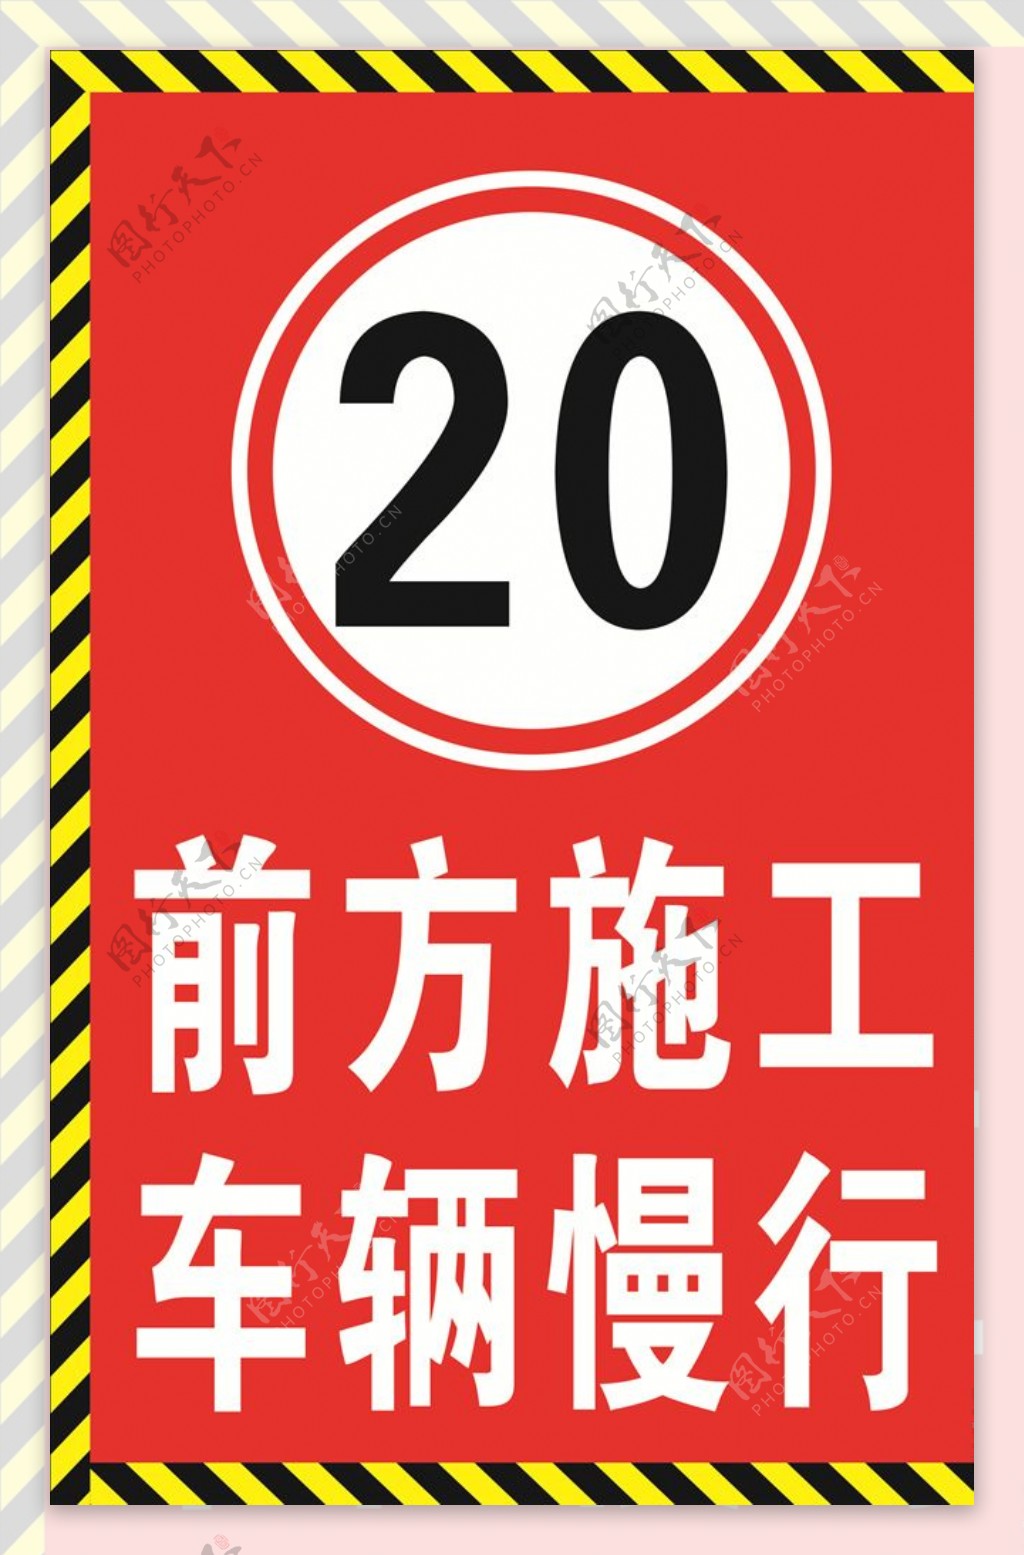 前方施工限速20禁示牌